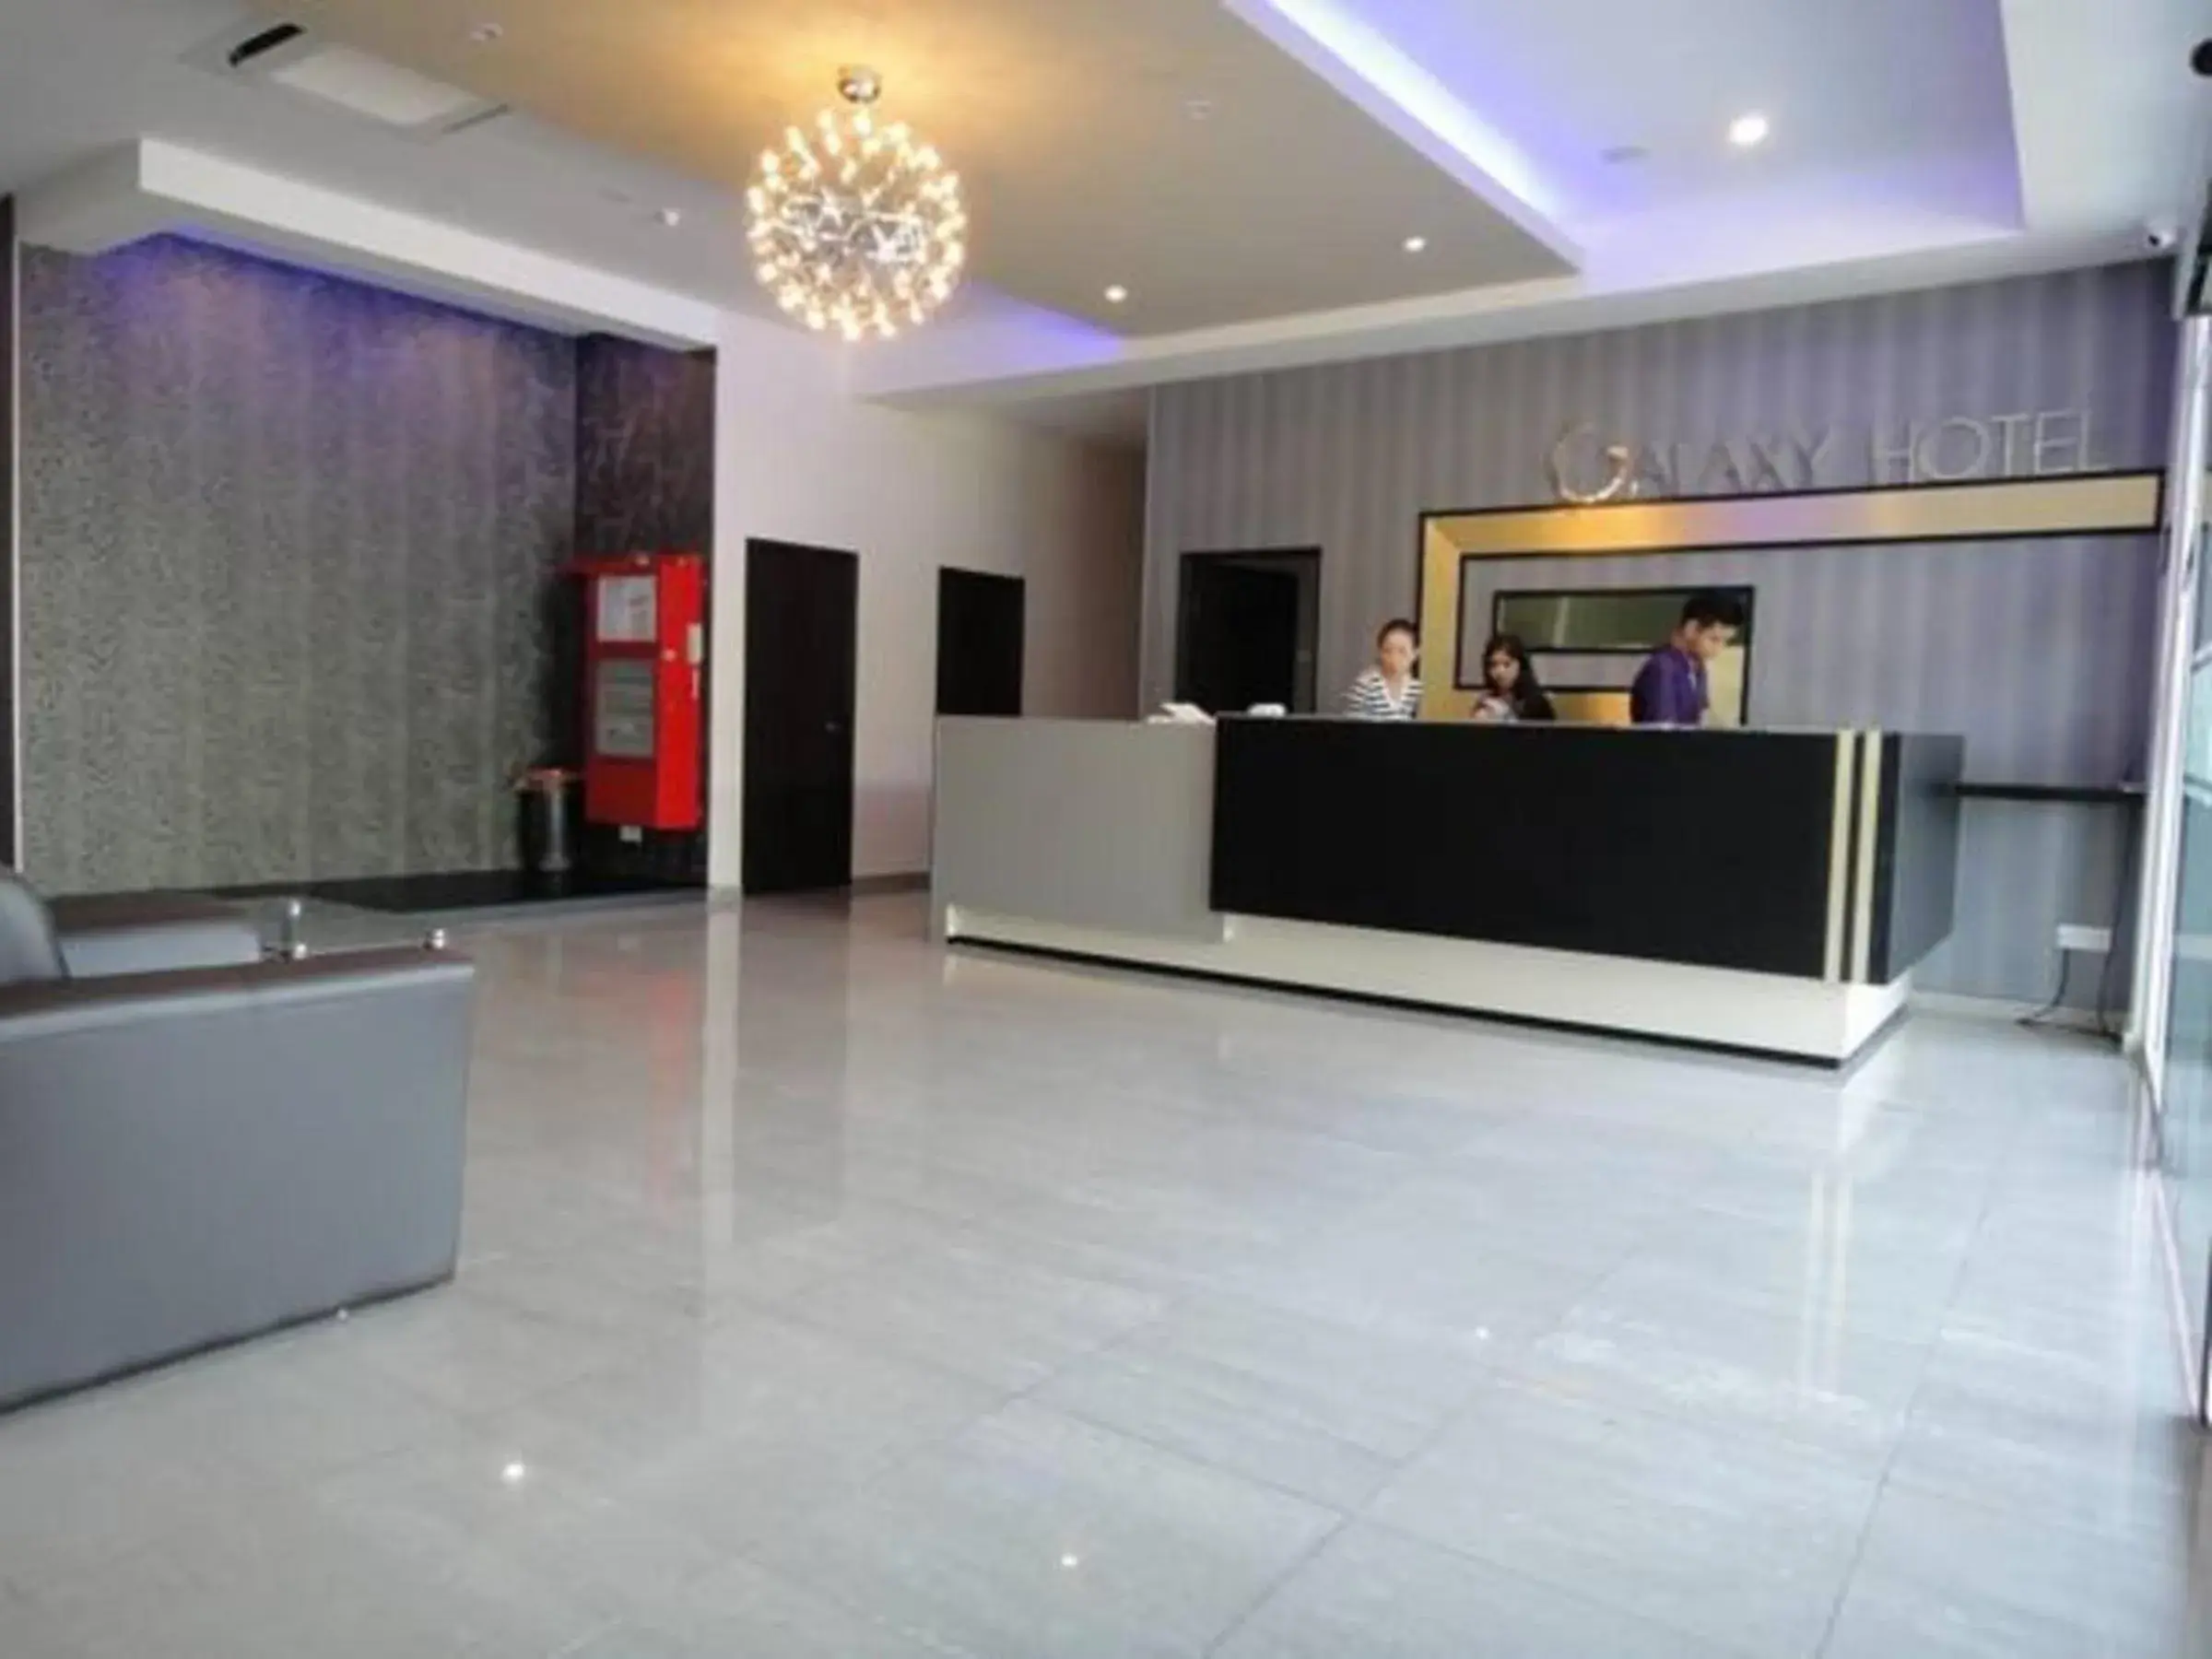 Lobby or reception, Lobby/Reception in Galaxy Hotel